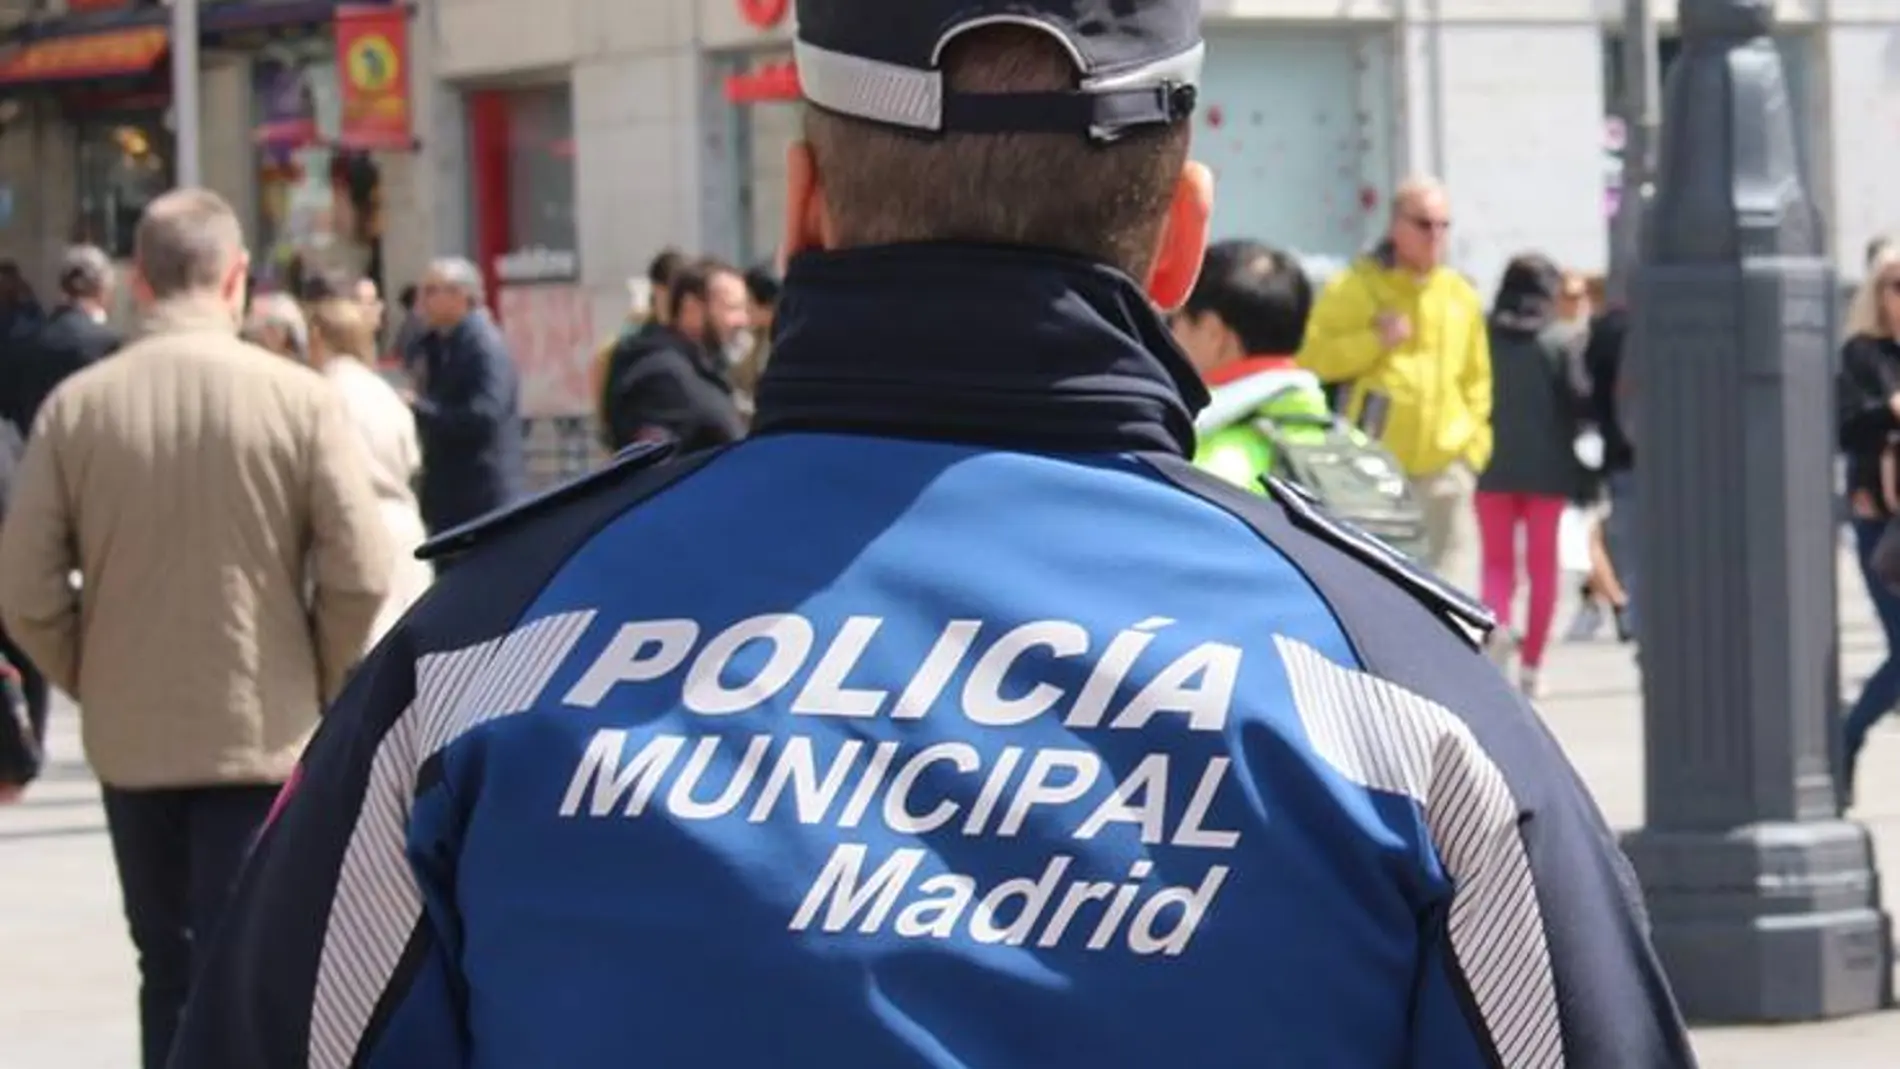 La Policía Municipal de Madrid ha detenido al individuo